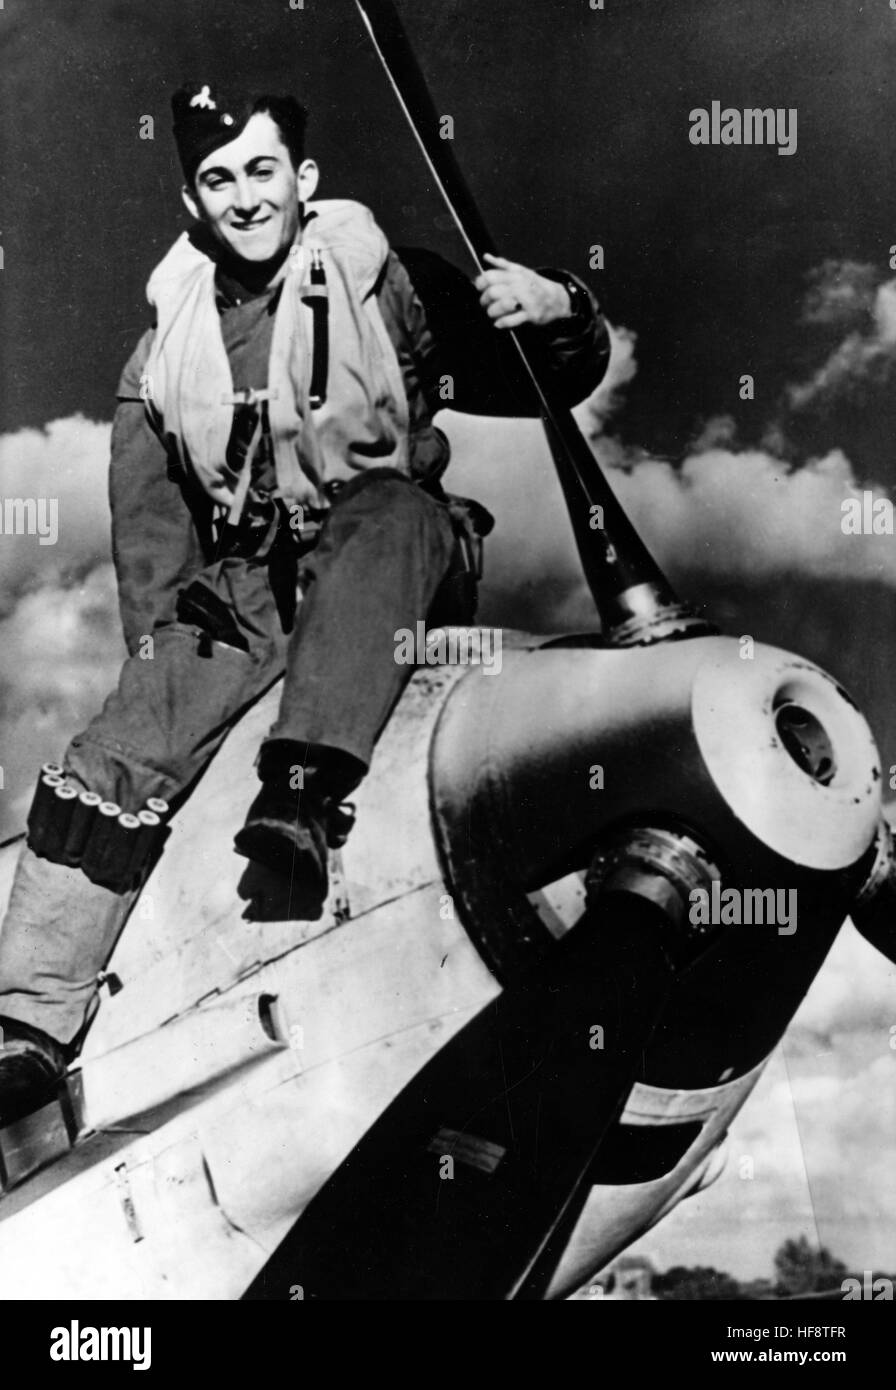 L'immagine della propaganda nazista mostra un giovane pilota da combattimento del tedesco Luftwaffe sul suo aereo da guerra Messerschmitt BF 109. Pubblicato nel novembre 1940. Il reporter nazista ha scritto sul retro della foto su 07.11.1940, 'la 'Squirt' dello squadrone combattente. Per quanto giovane, ha già compiuto con successo più di 30 sorties. Le basi della sua formazione sono state poste nel suo tempo nella Gioventù Hitler.' Fotoarchiv für Zeitgeschichte - NESSUN SERVIZIO DI CABLAGGIO - | utilizzo in tutto il mondo Foto Stock